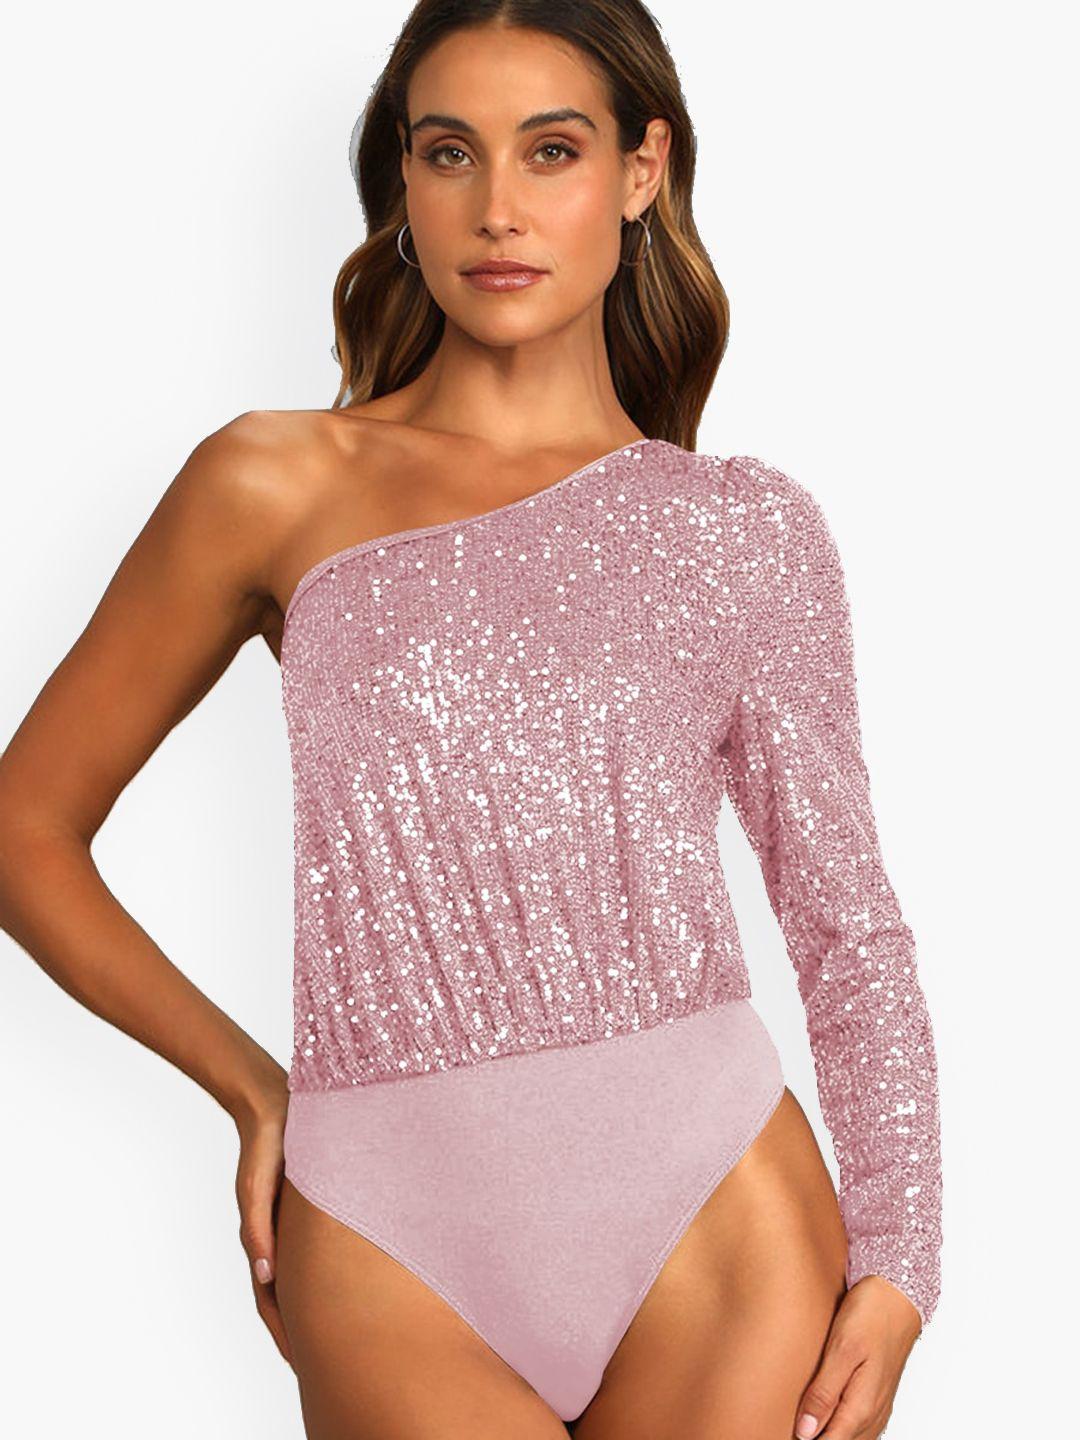 stylecast-pink-one-shoulder-embellished-bodysuit